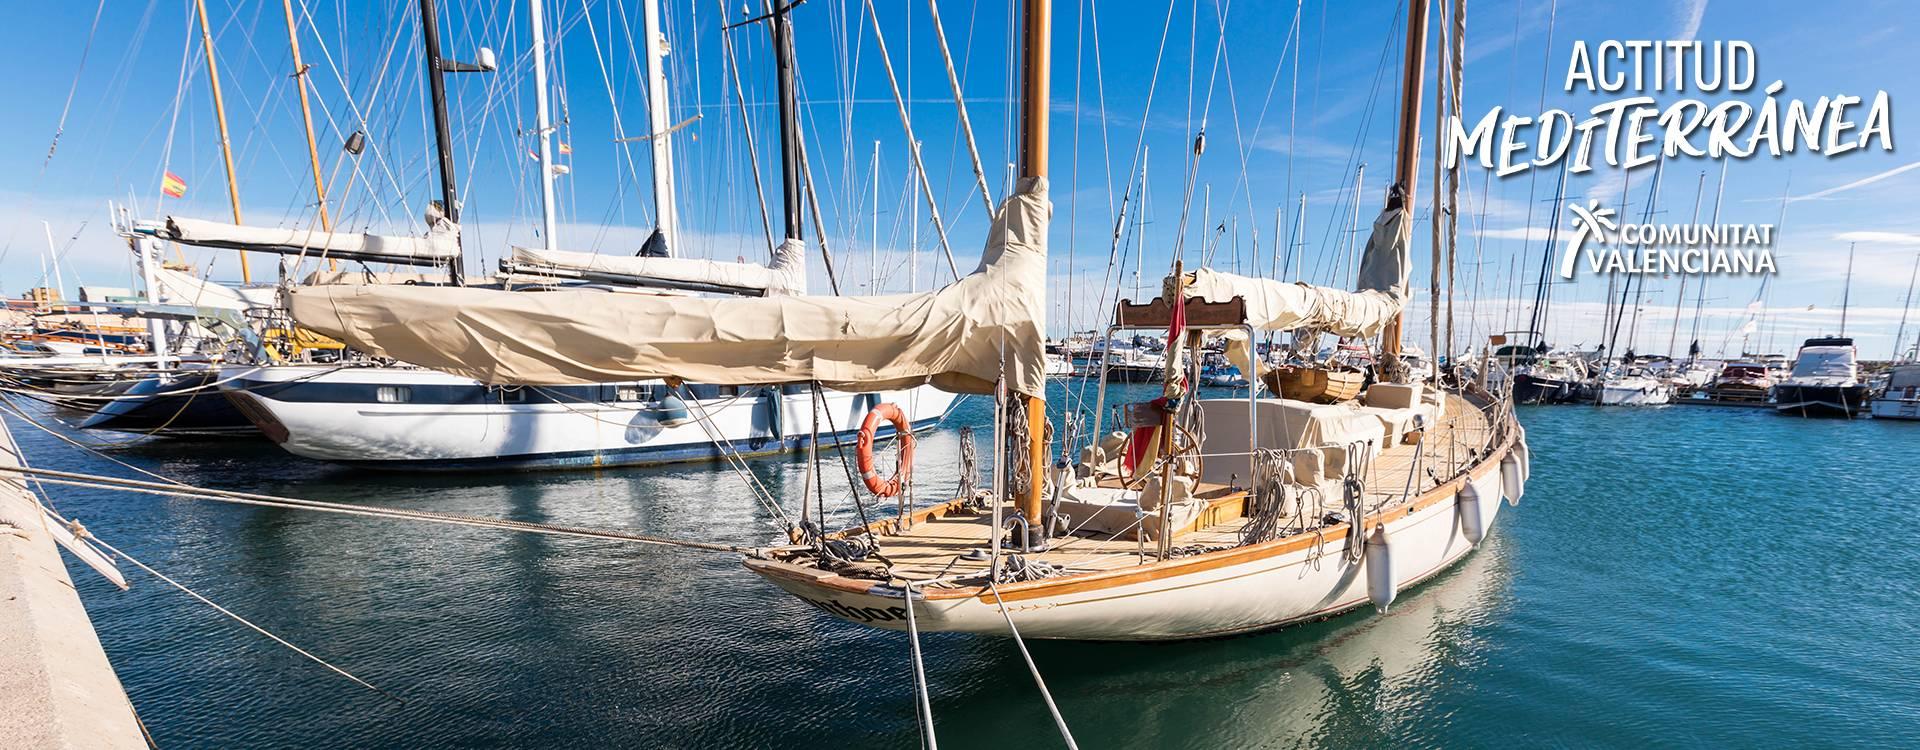 Barcos clásicos en club náutico de la Comunitat Valenciana